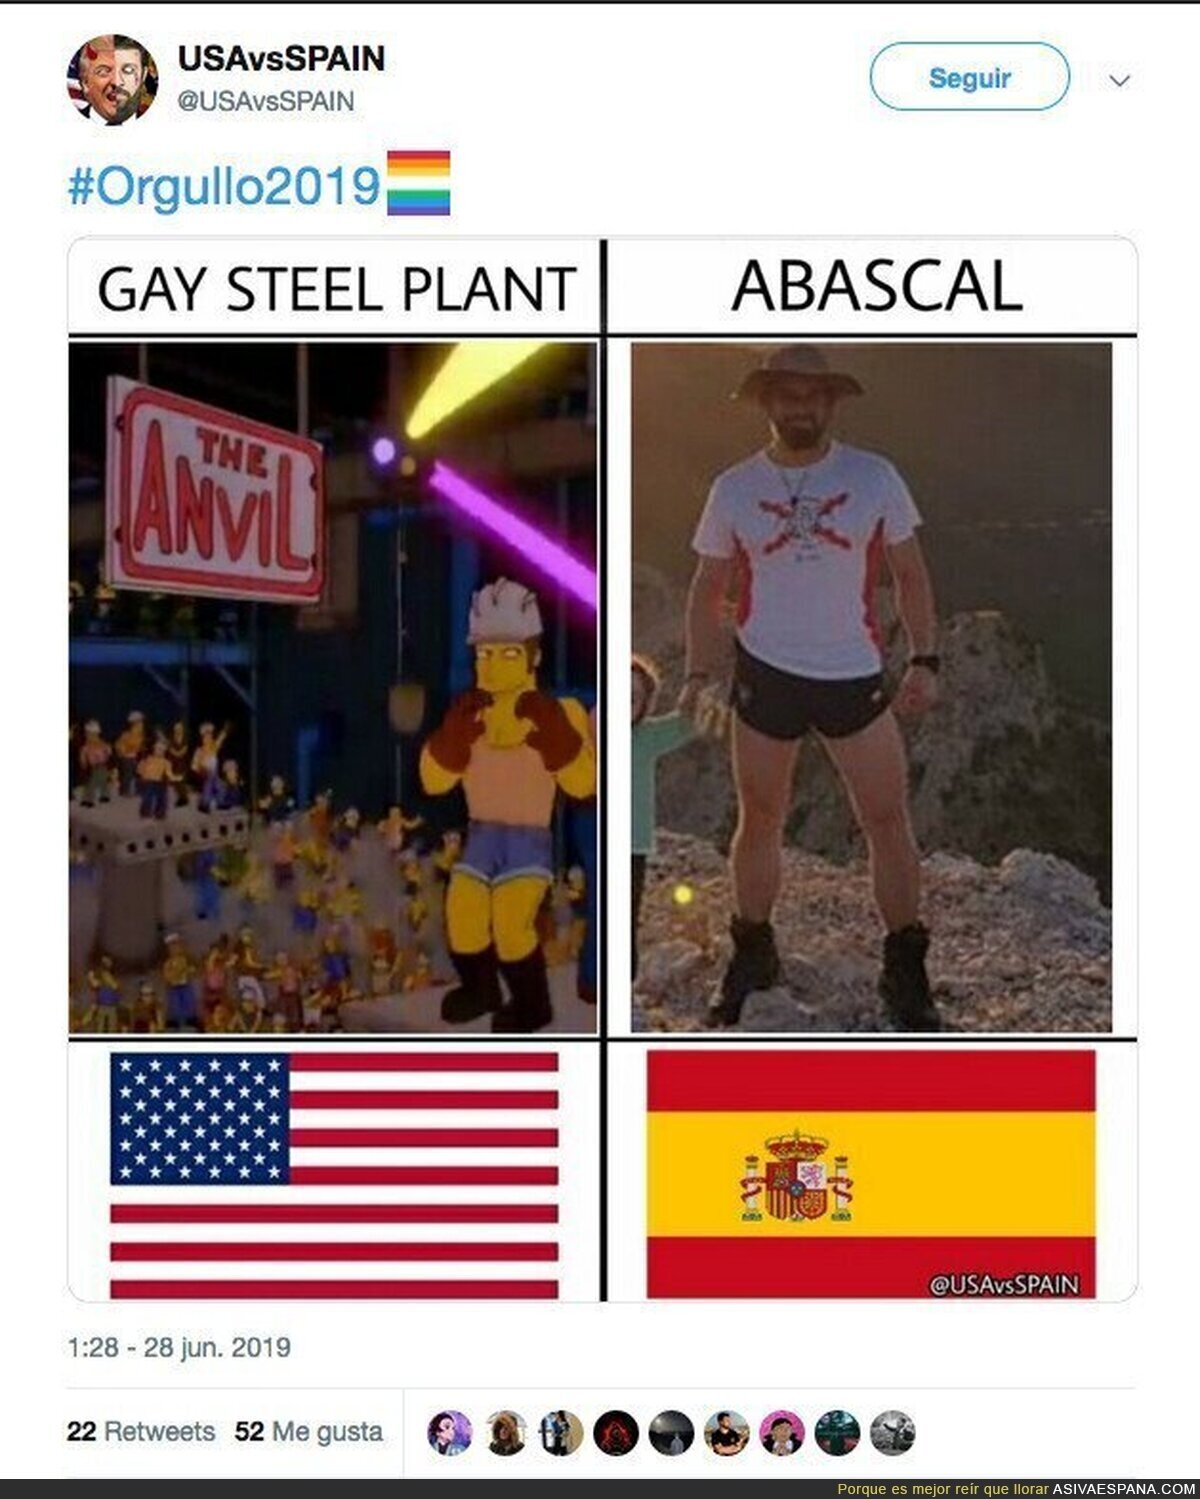 USA vs SPAIN